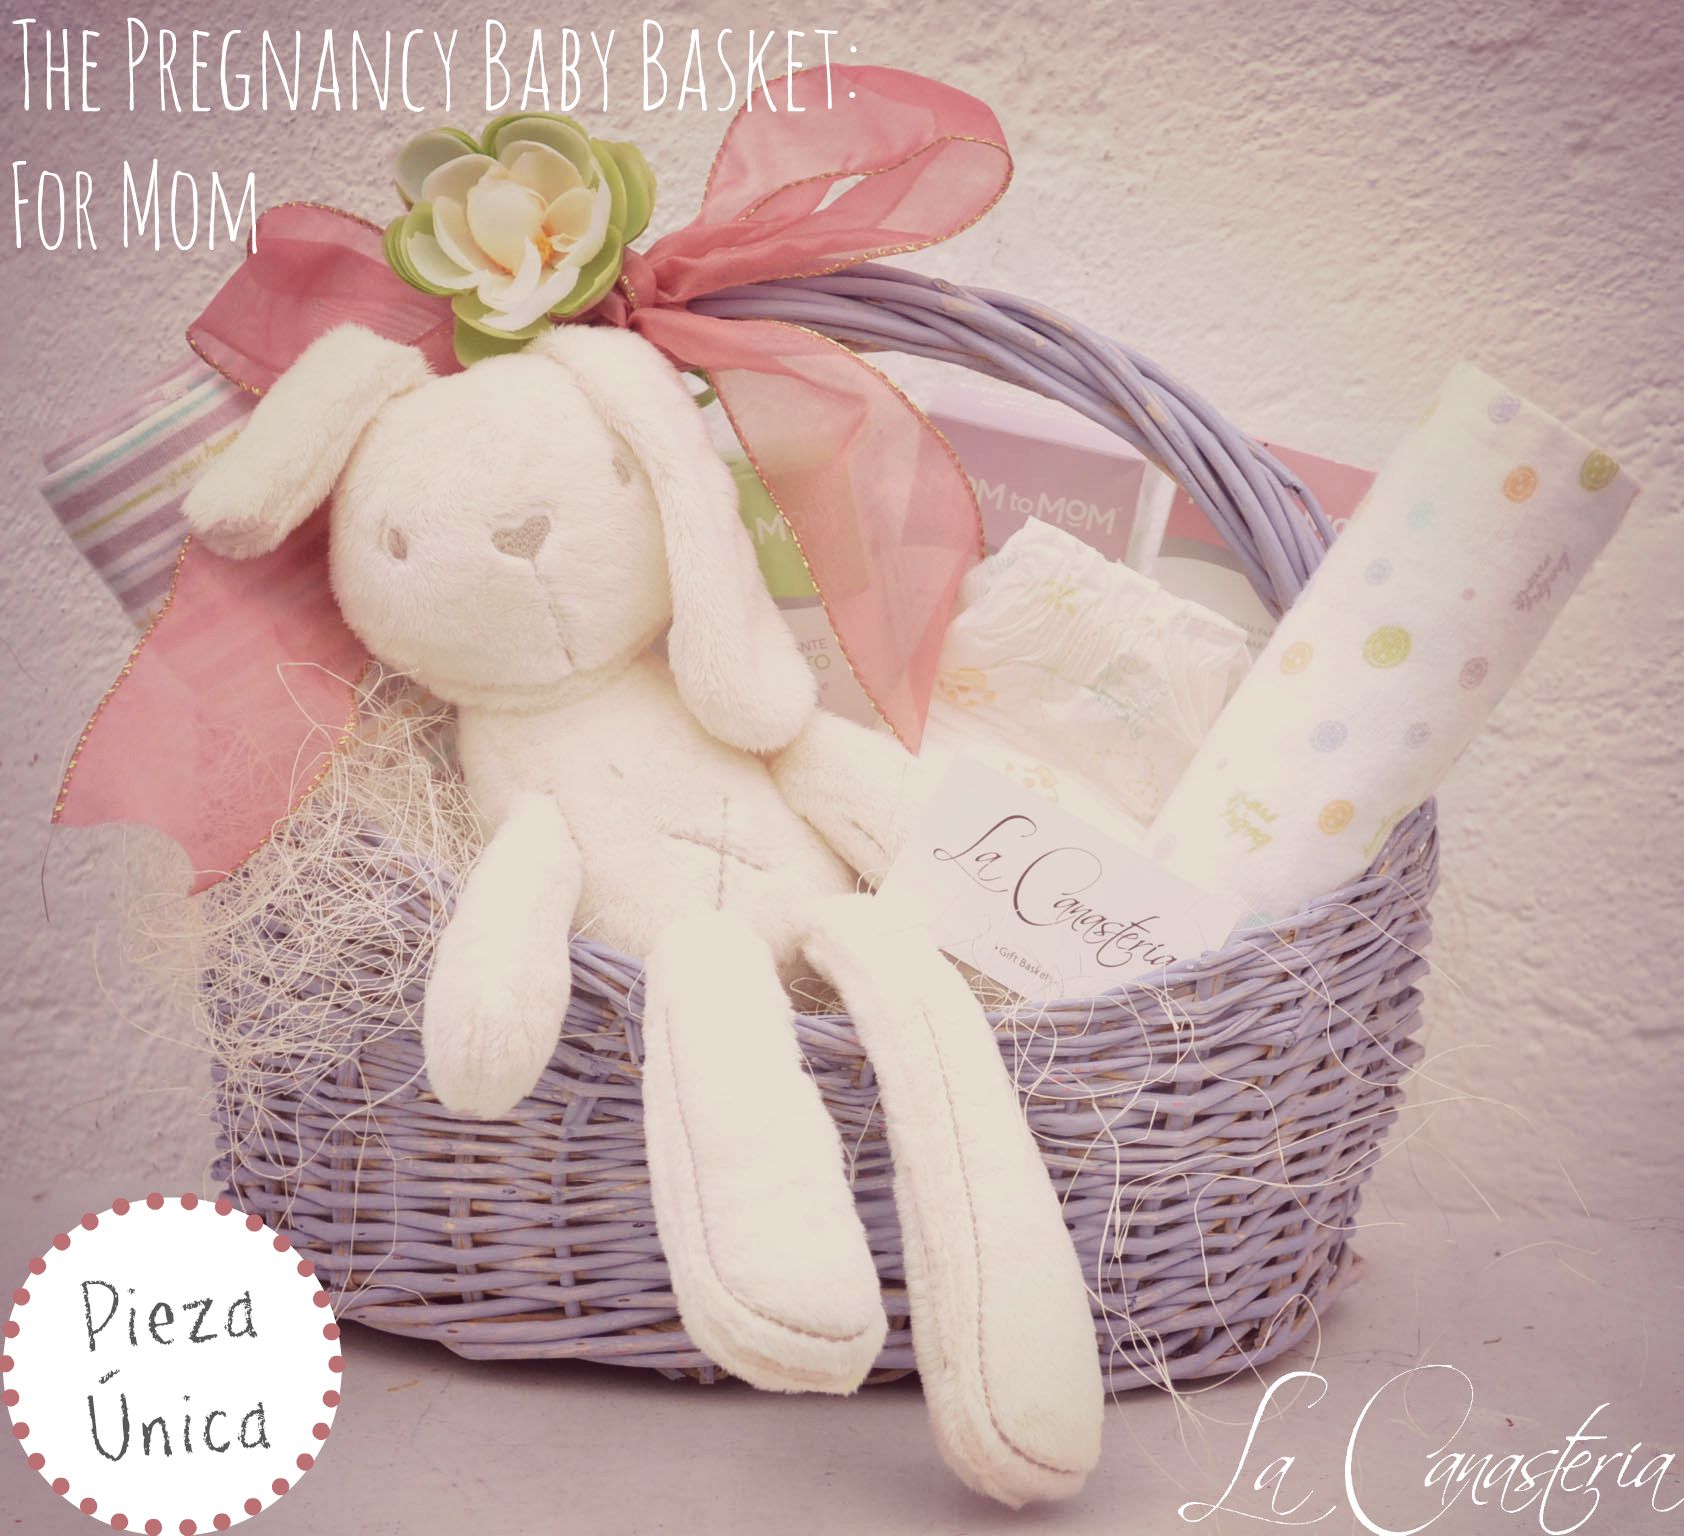 regalos originales para embarazo mujeres embarazadas – Blog La Canasteria